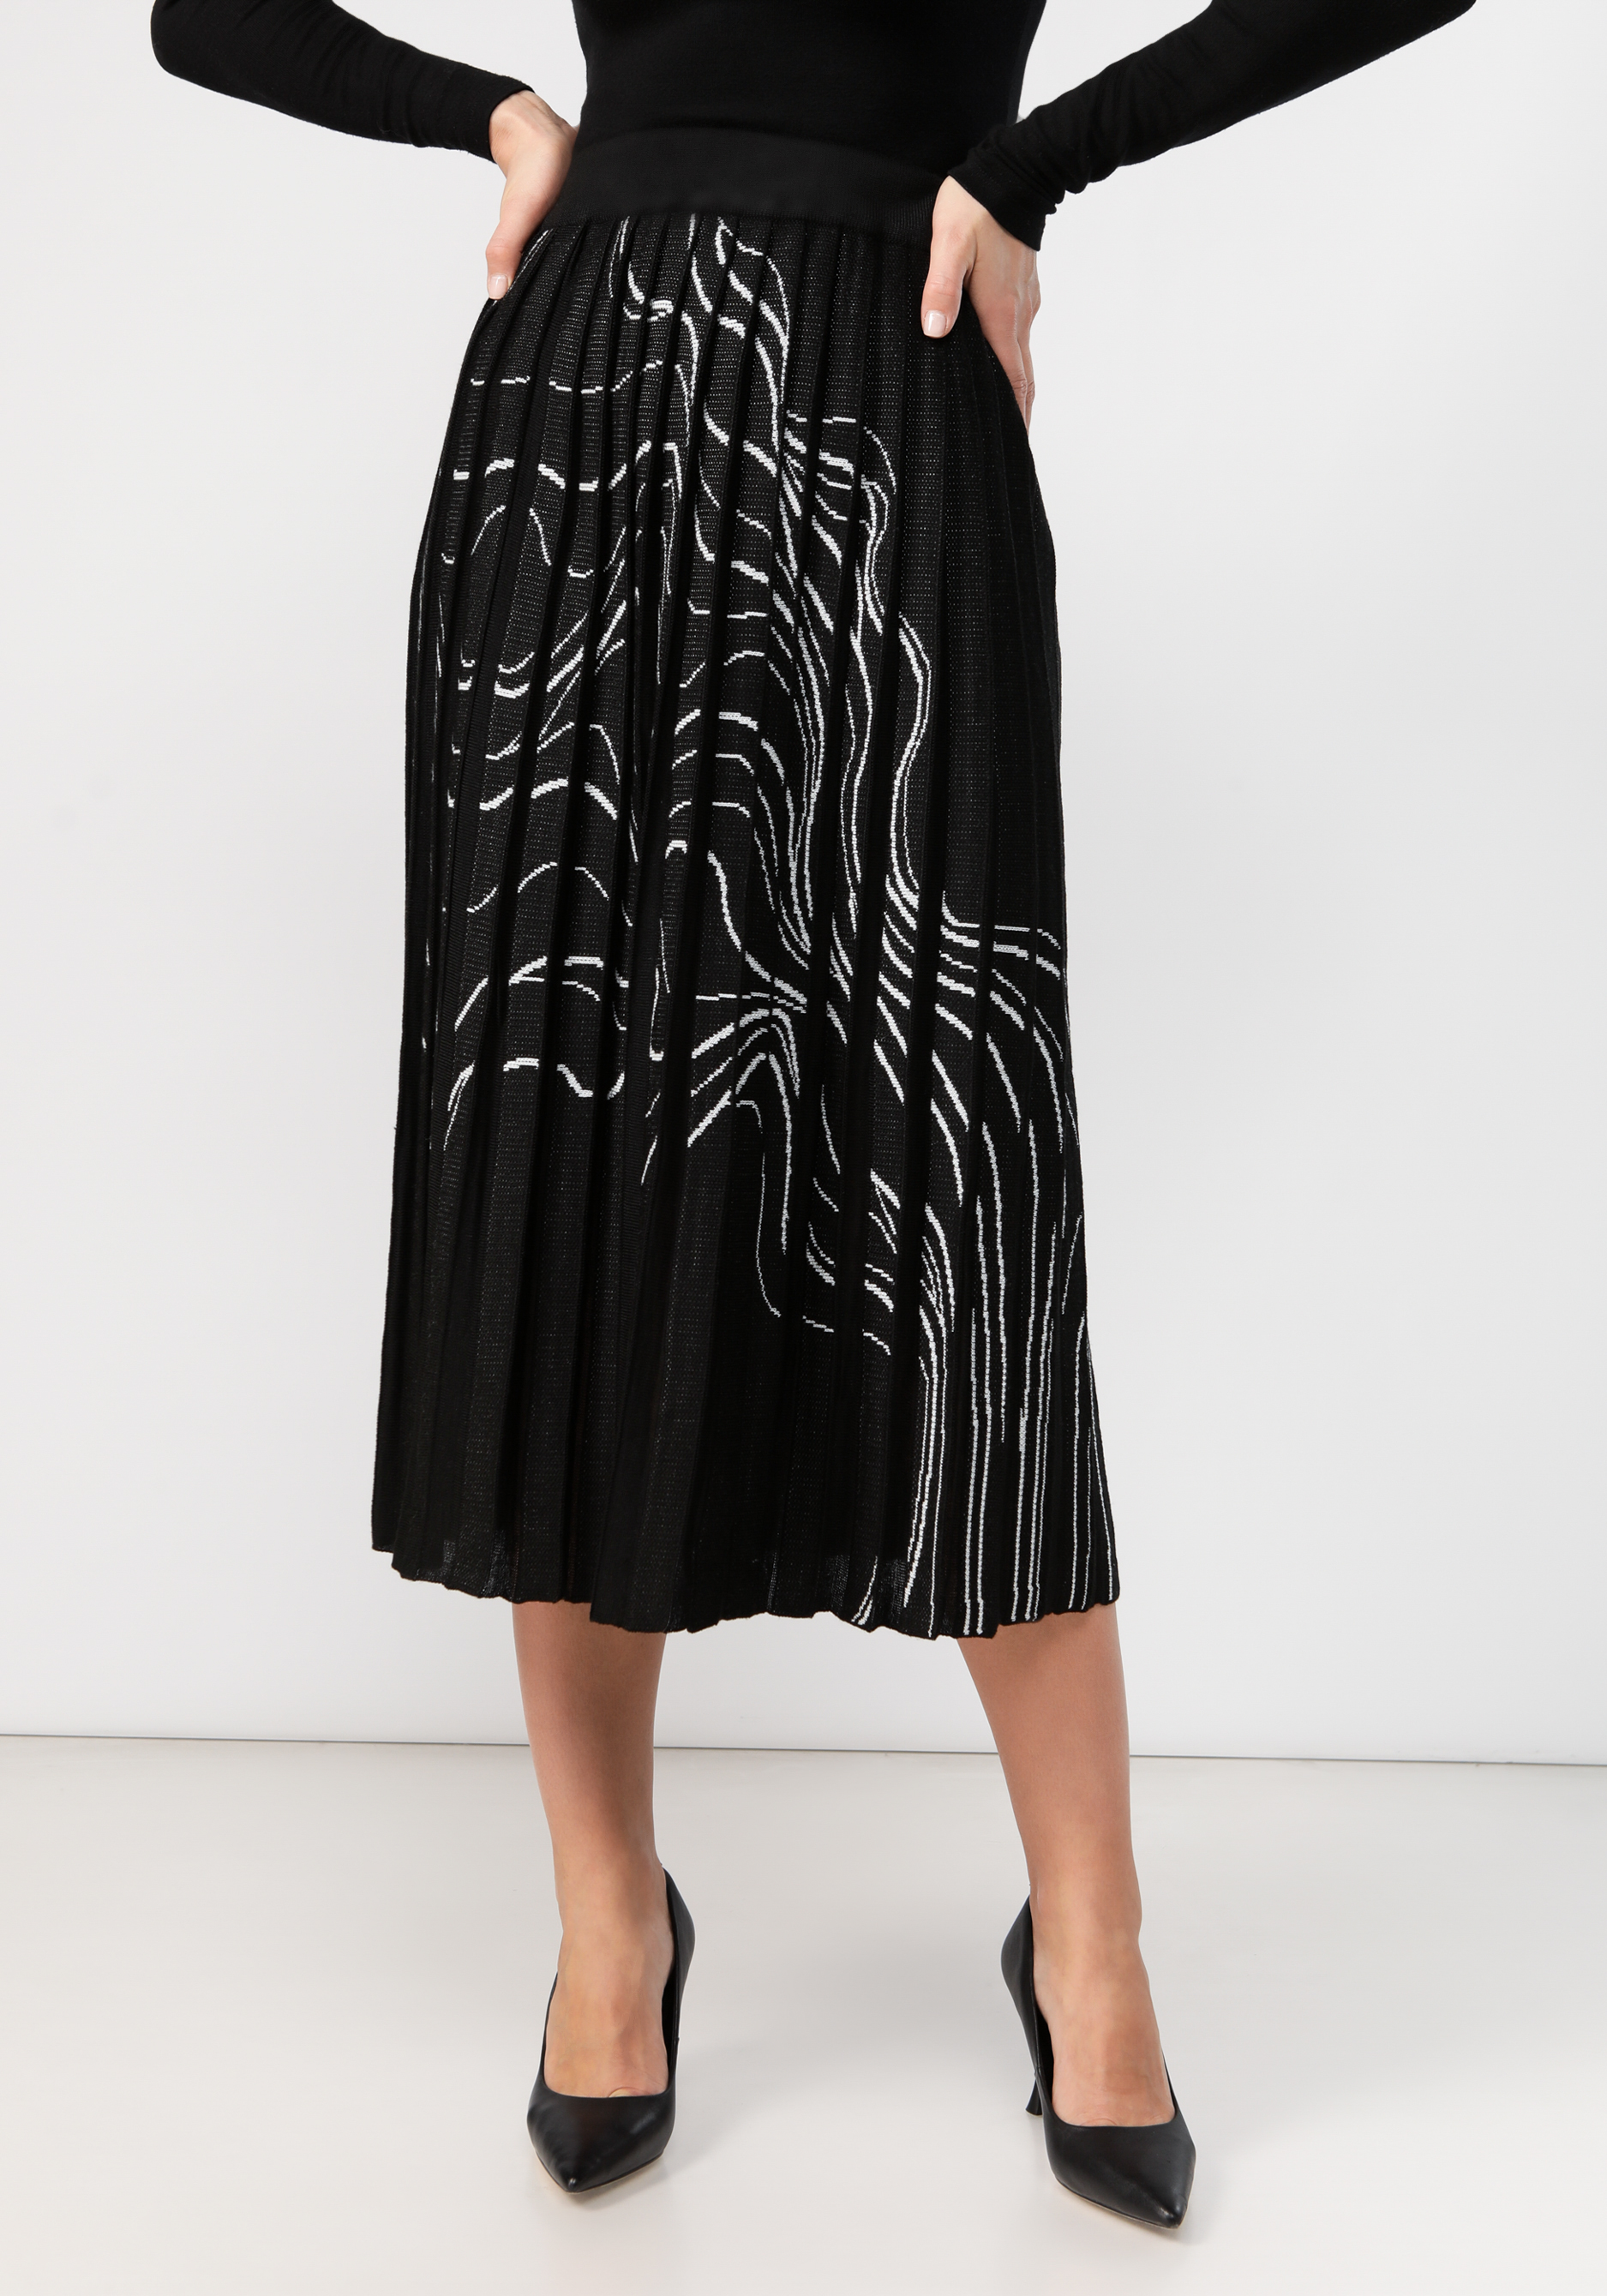 Юбка плиссе с абстрактным рисунком юбка шорты трикотажная